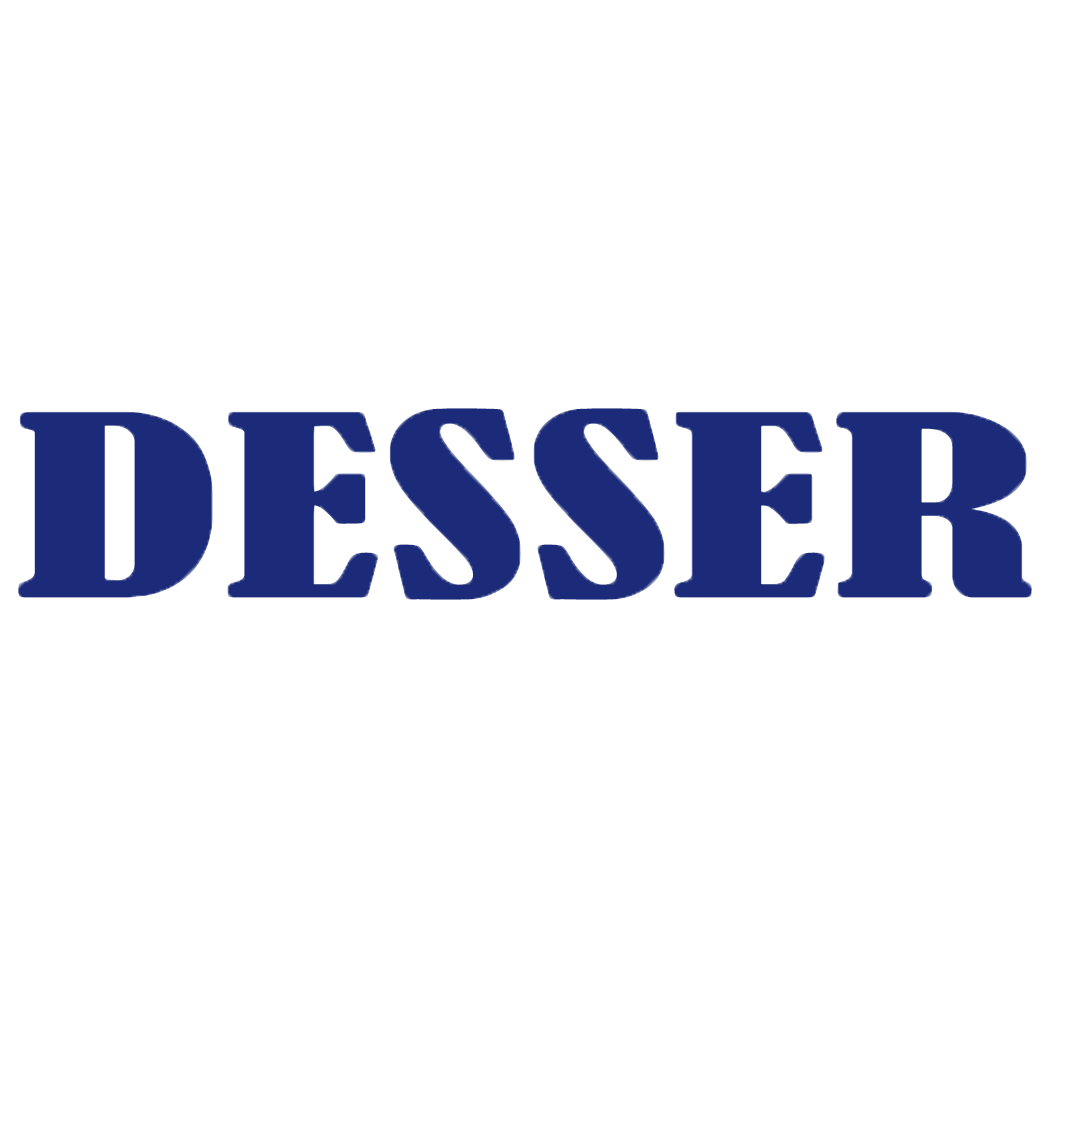 Desser logo